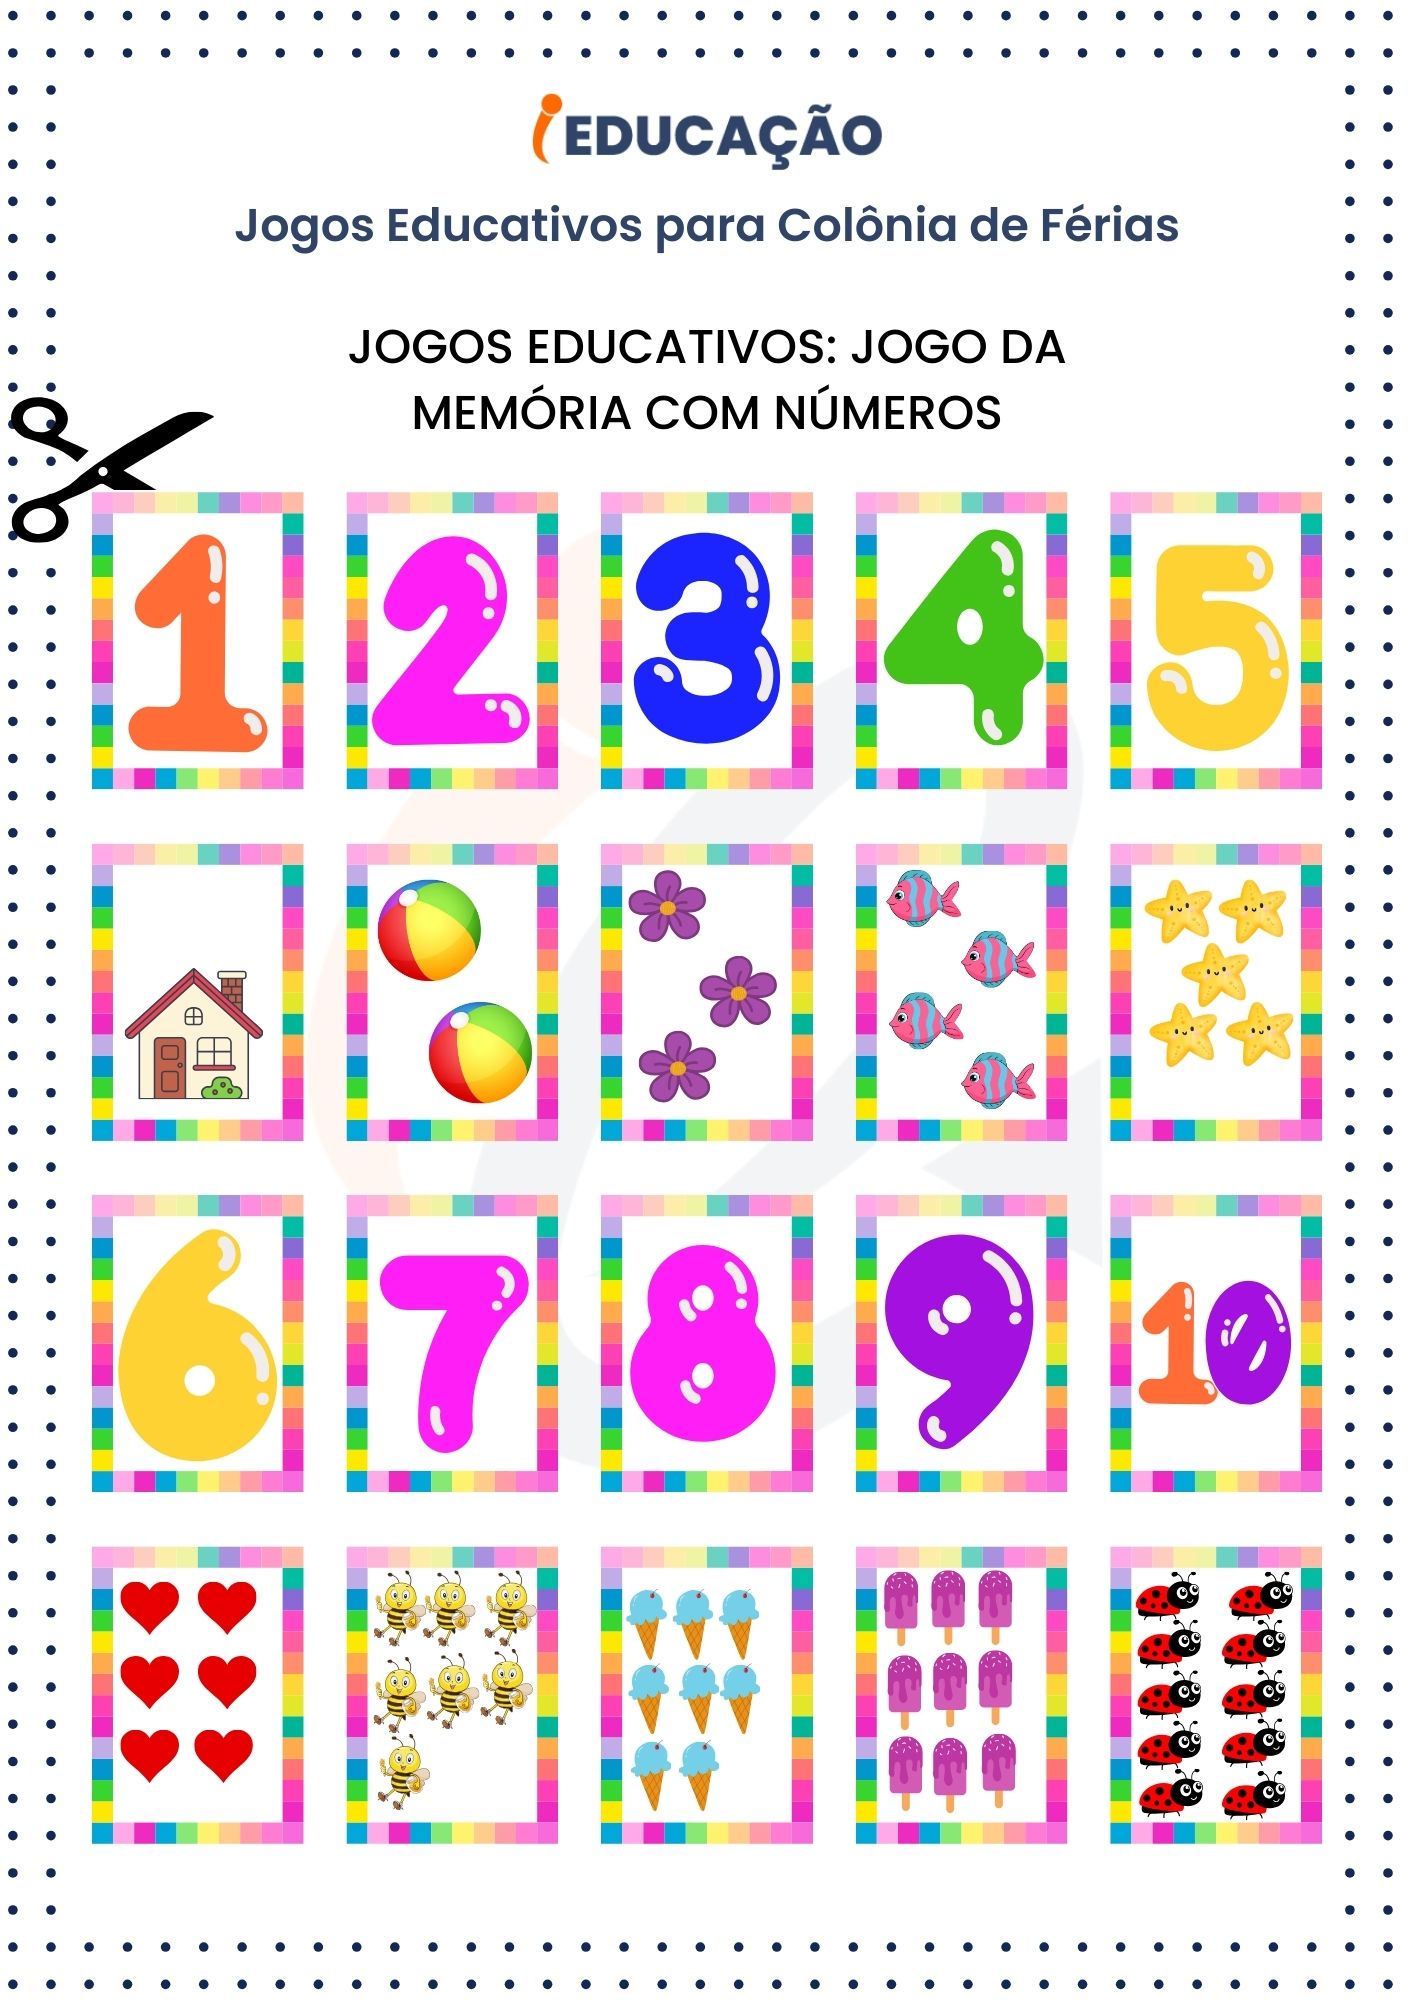 Jogos Educativos_ Jogo da Memória com Números